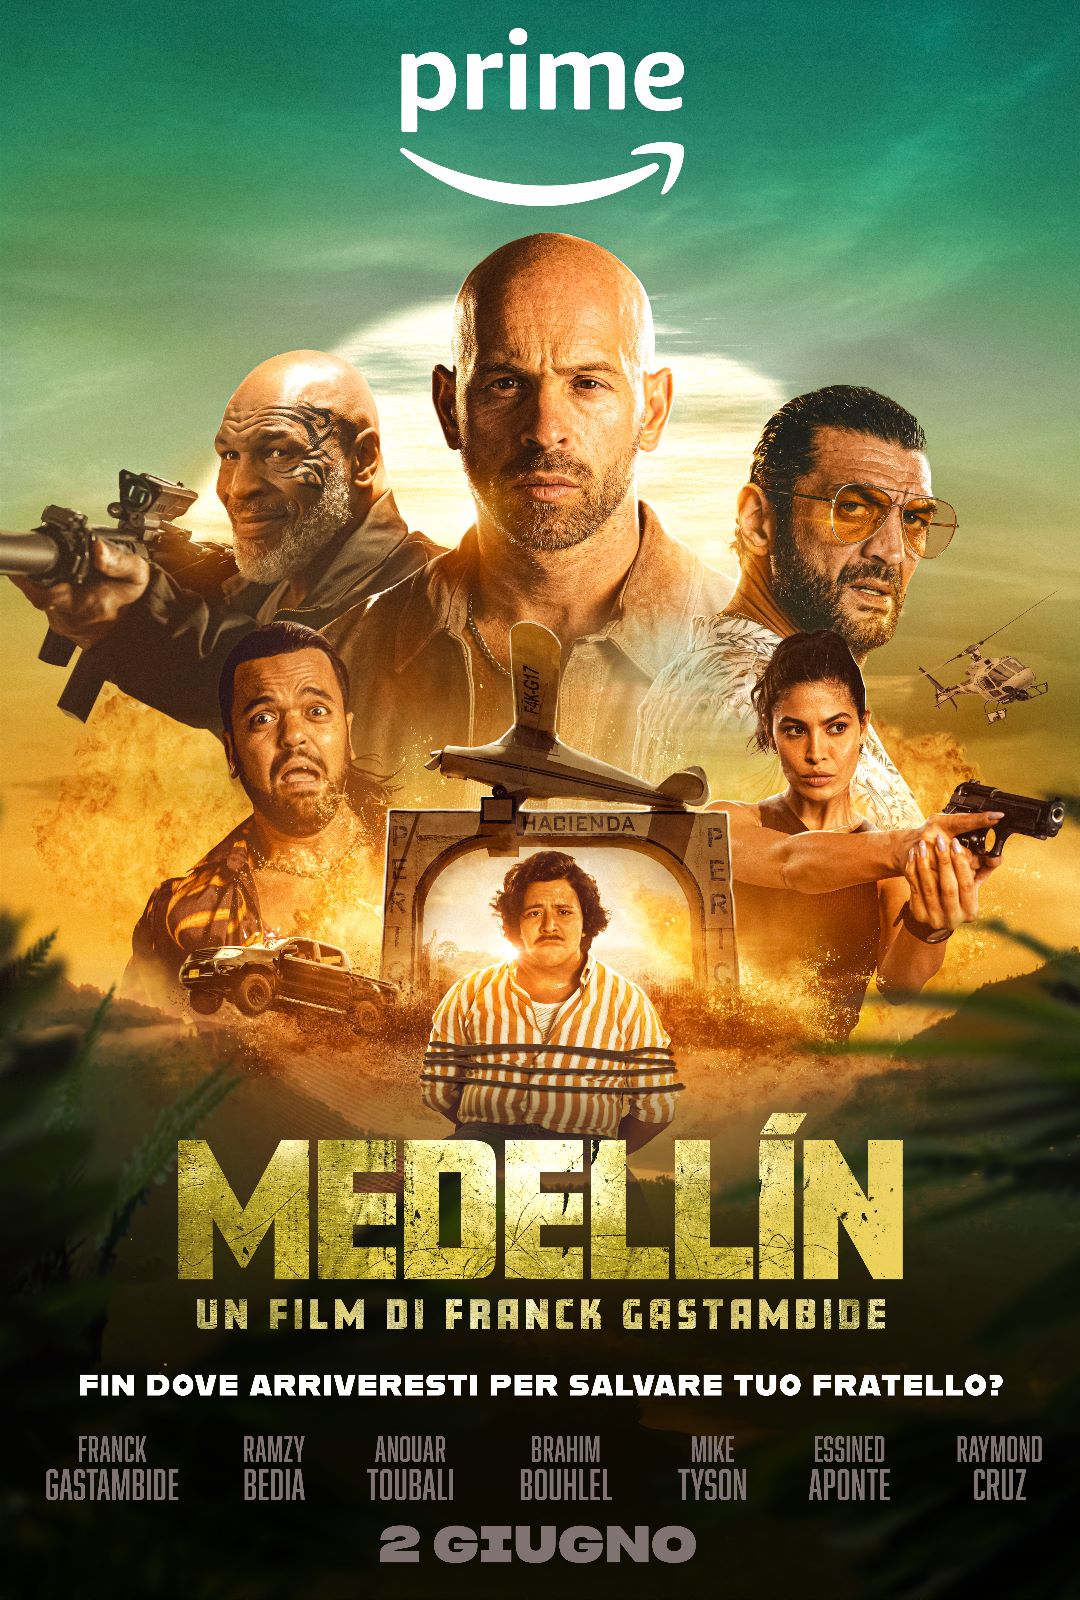 Medellín, il nuovo film comedy d’azione di Franck Gastambide